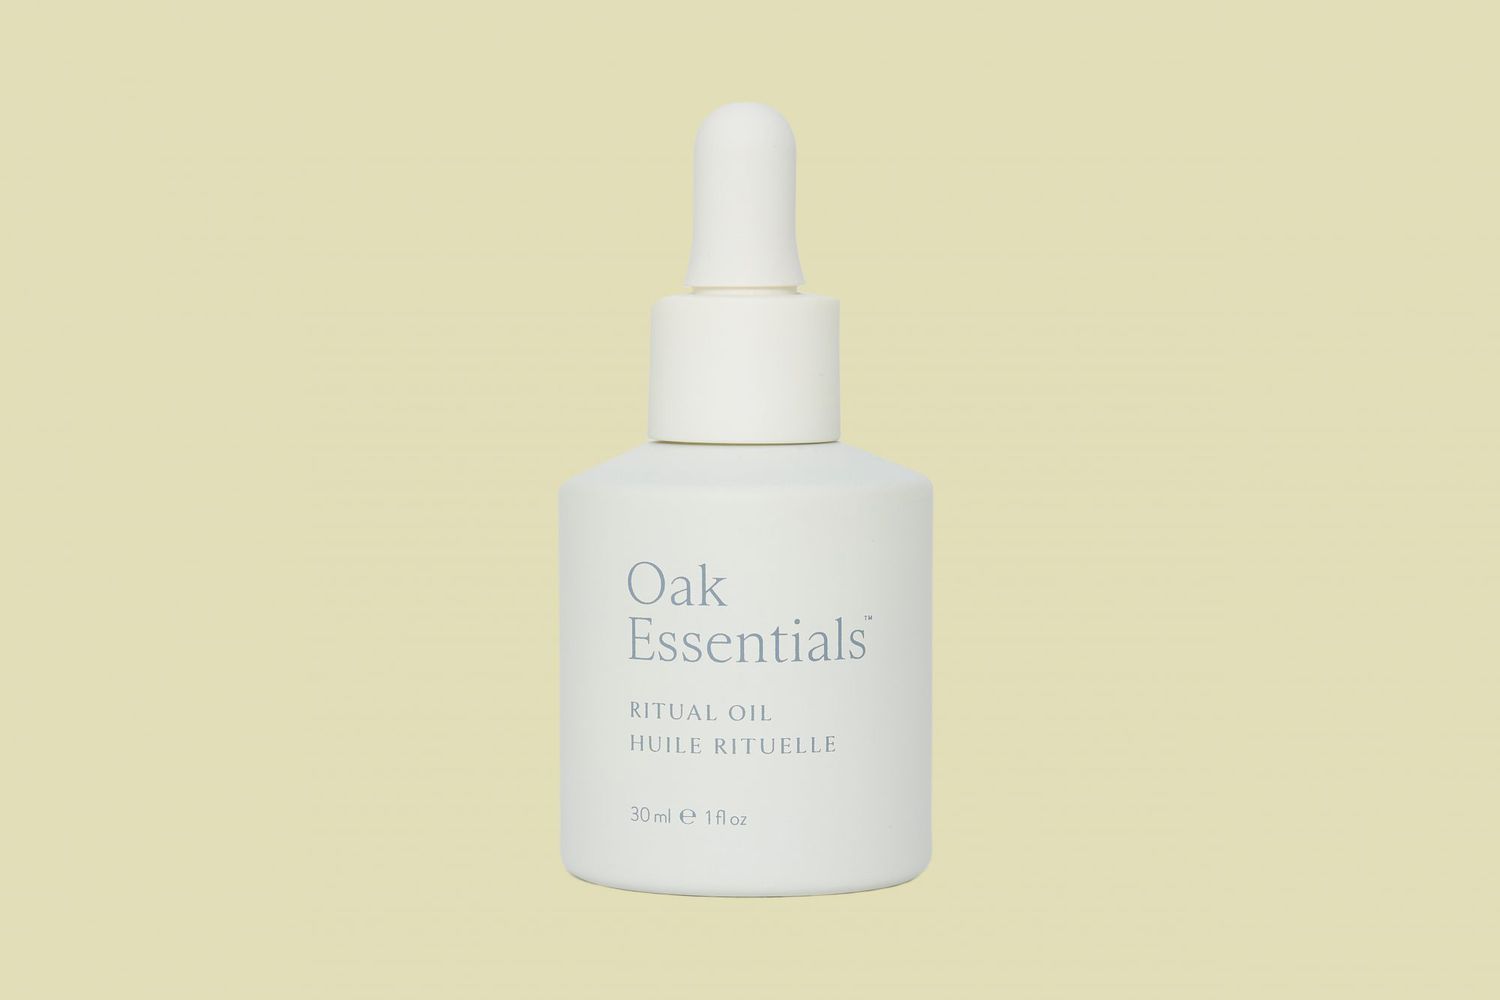 oak essentials ritual oil